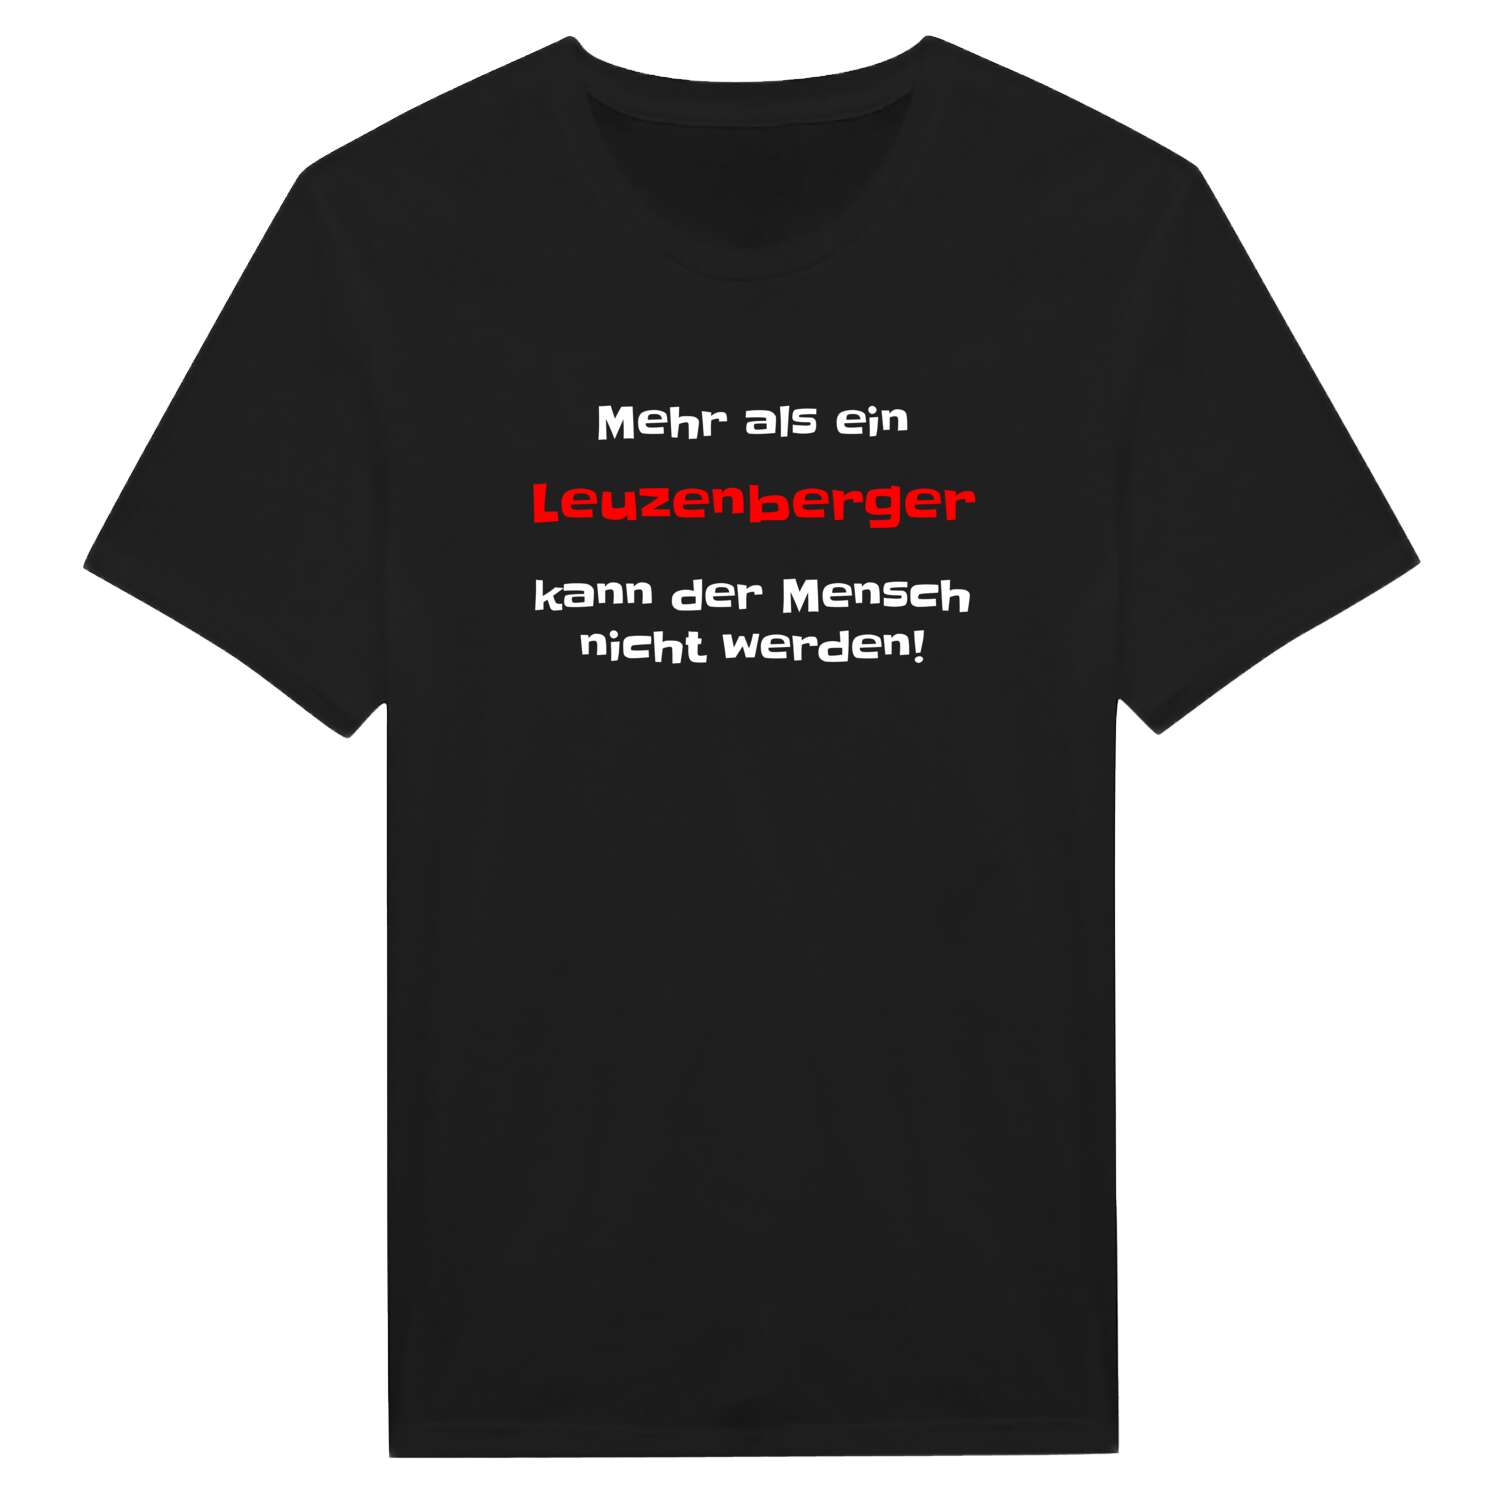 Leuzenberg T-Shirt »Mehr als ein«